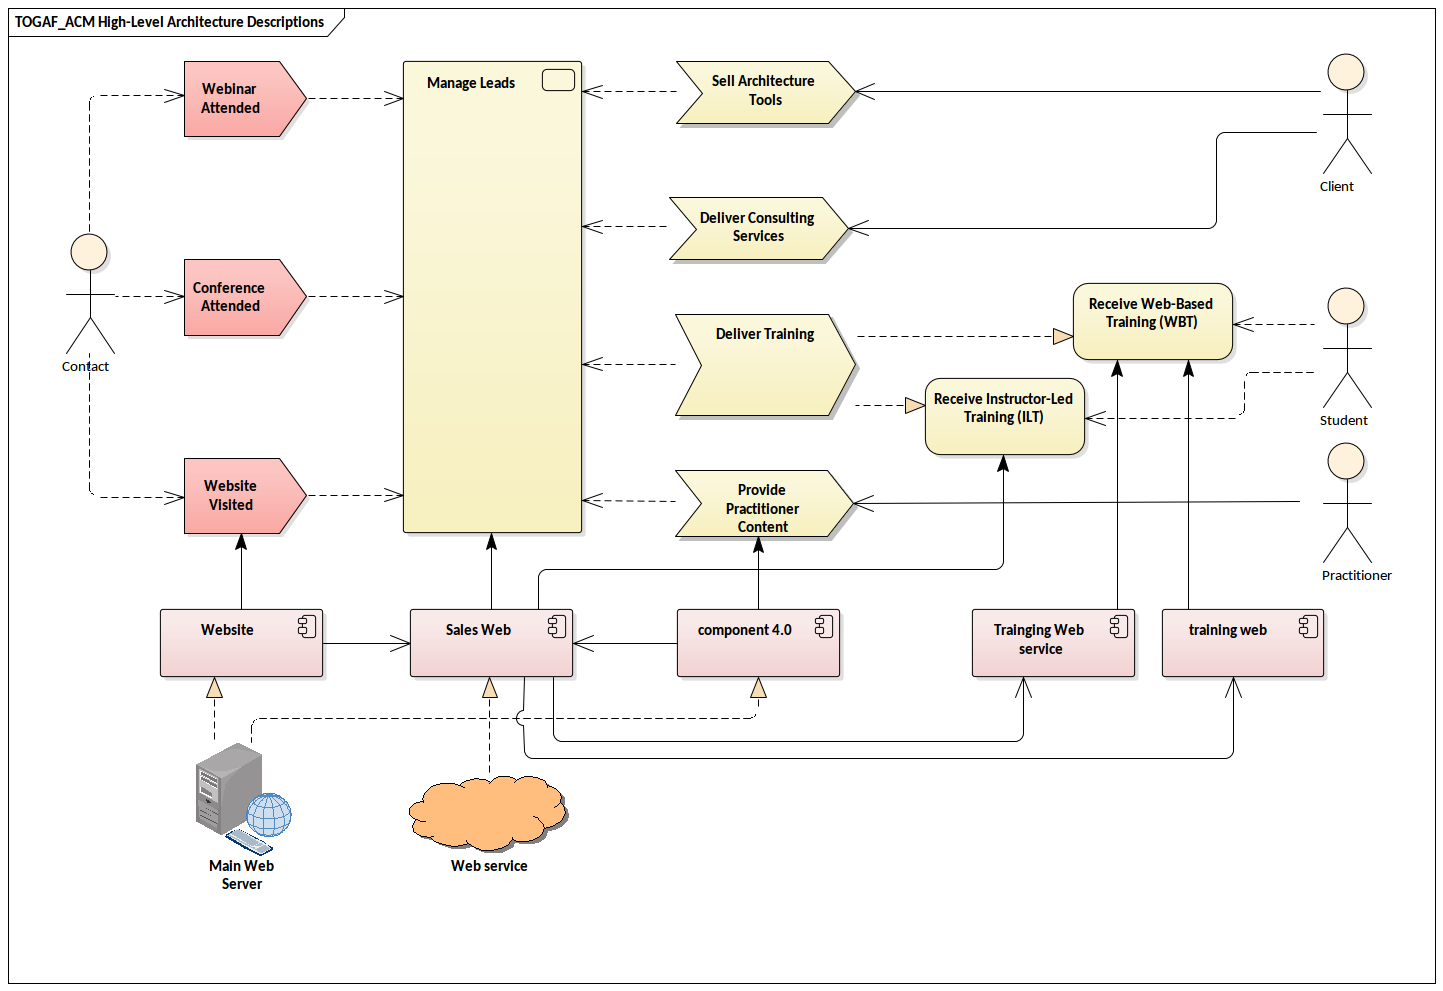 TOGAF High-Level Architecture Descriptions | Enterprise ...